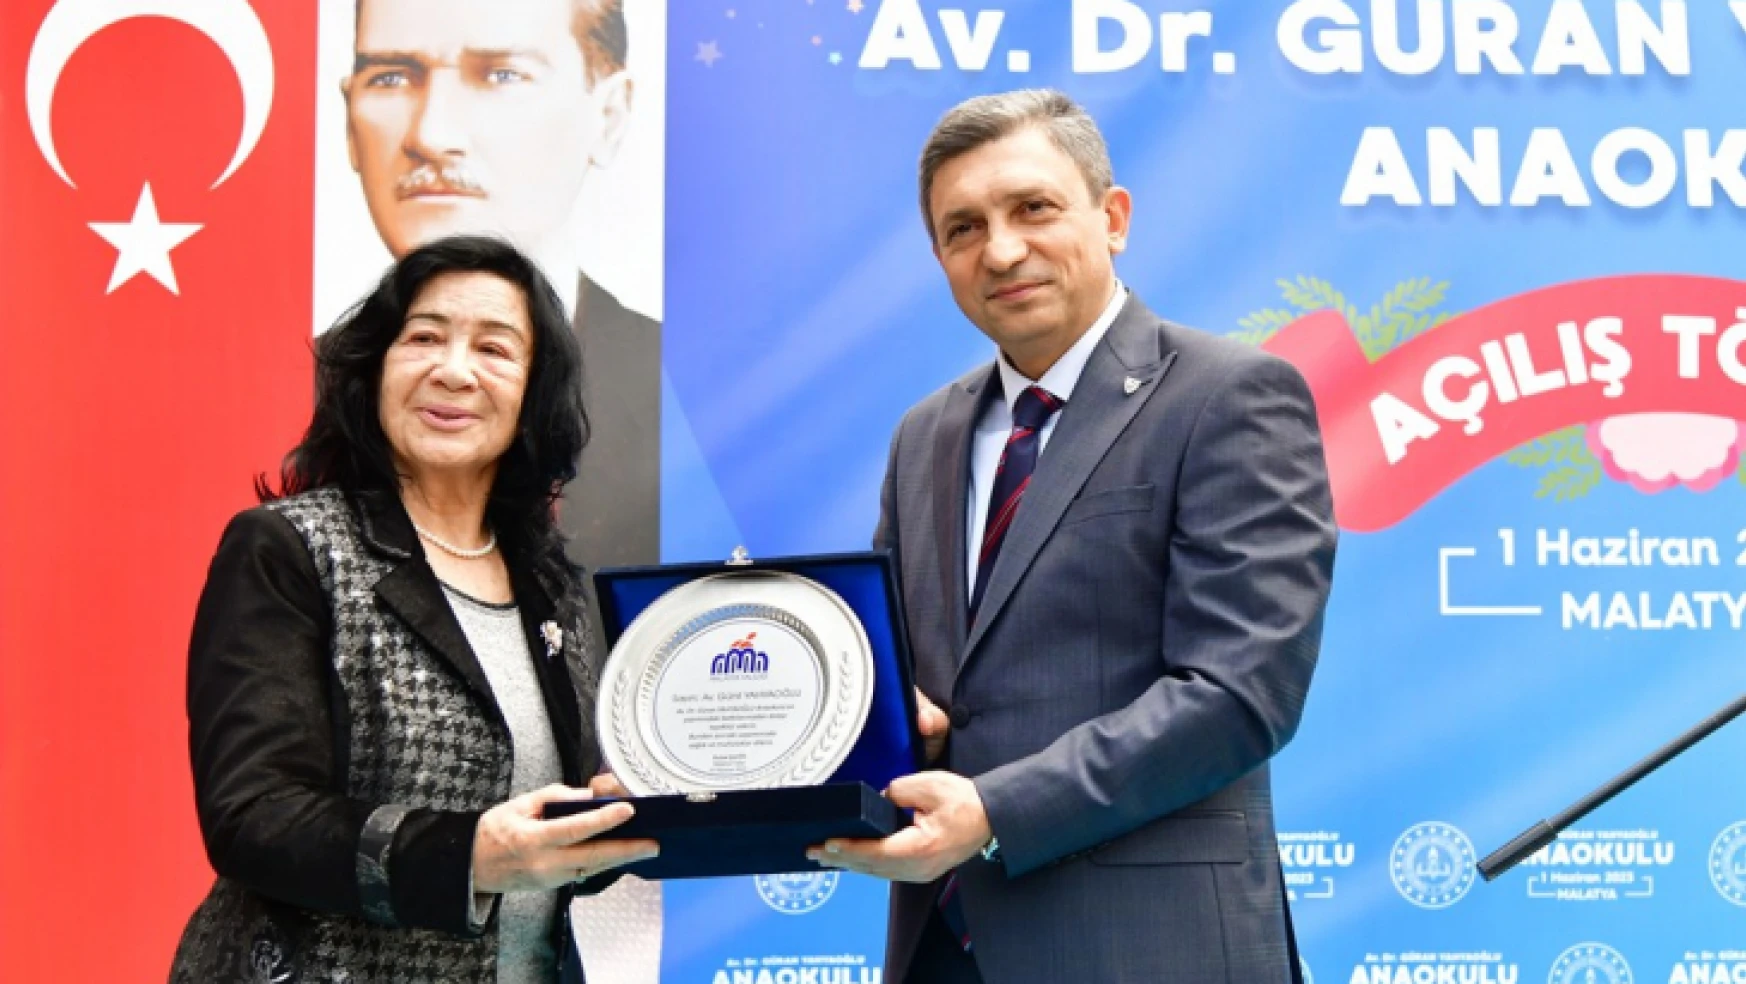 Av. Dr. Güran Yahyaoğlu Anaokulu Açılışı Törenle Yapıldı